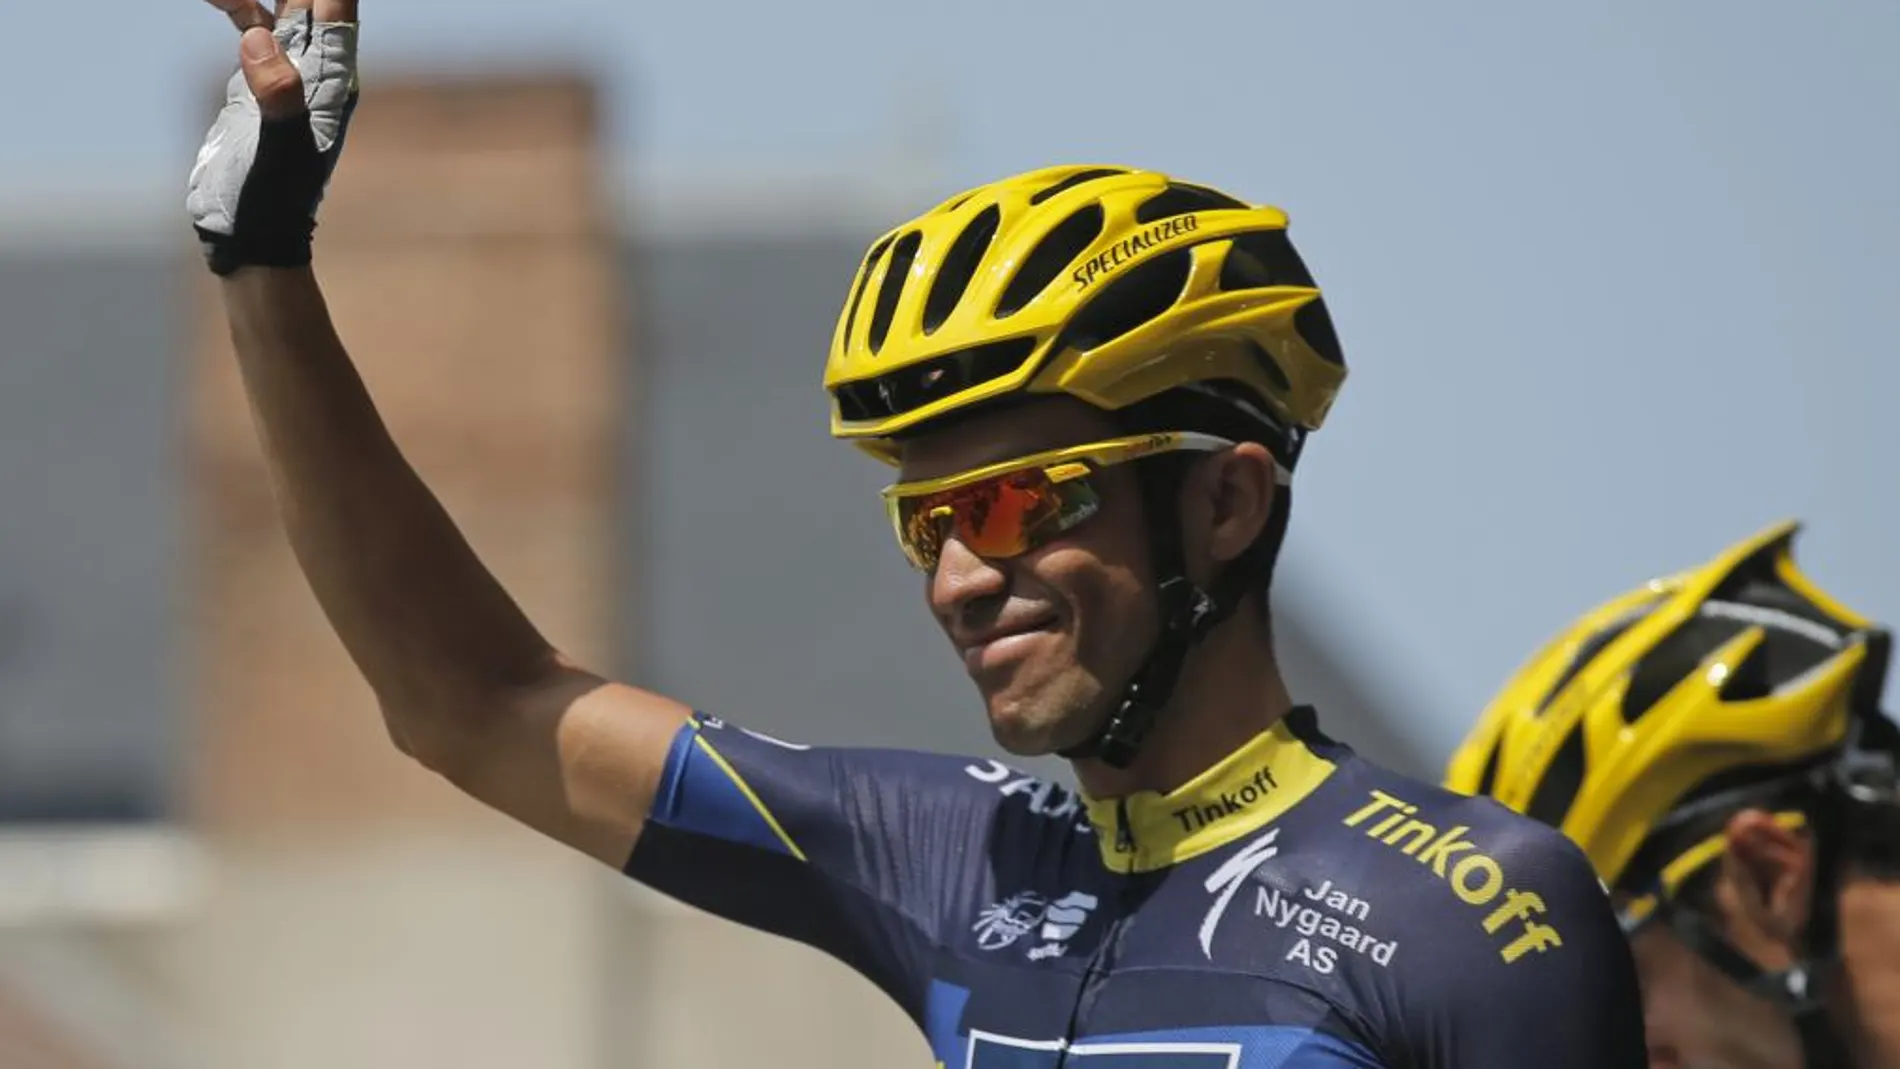 Alberto Contador saluda a los aficionados tras la etapa de hoy, la 14ª, que terminó en Lyon